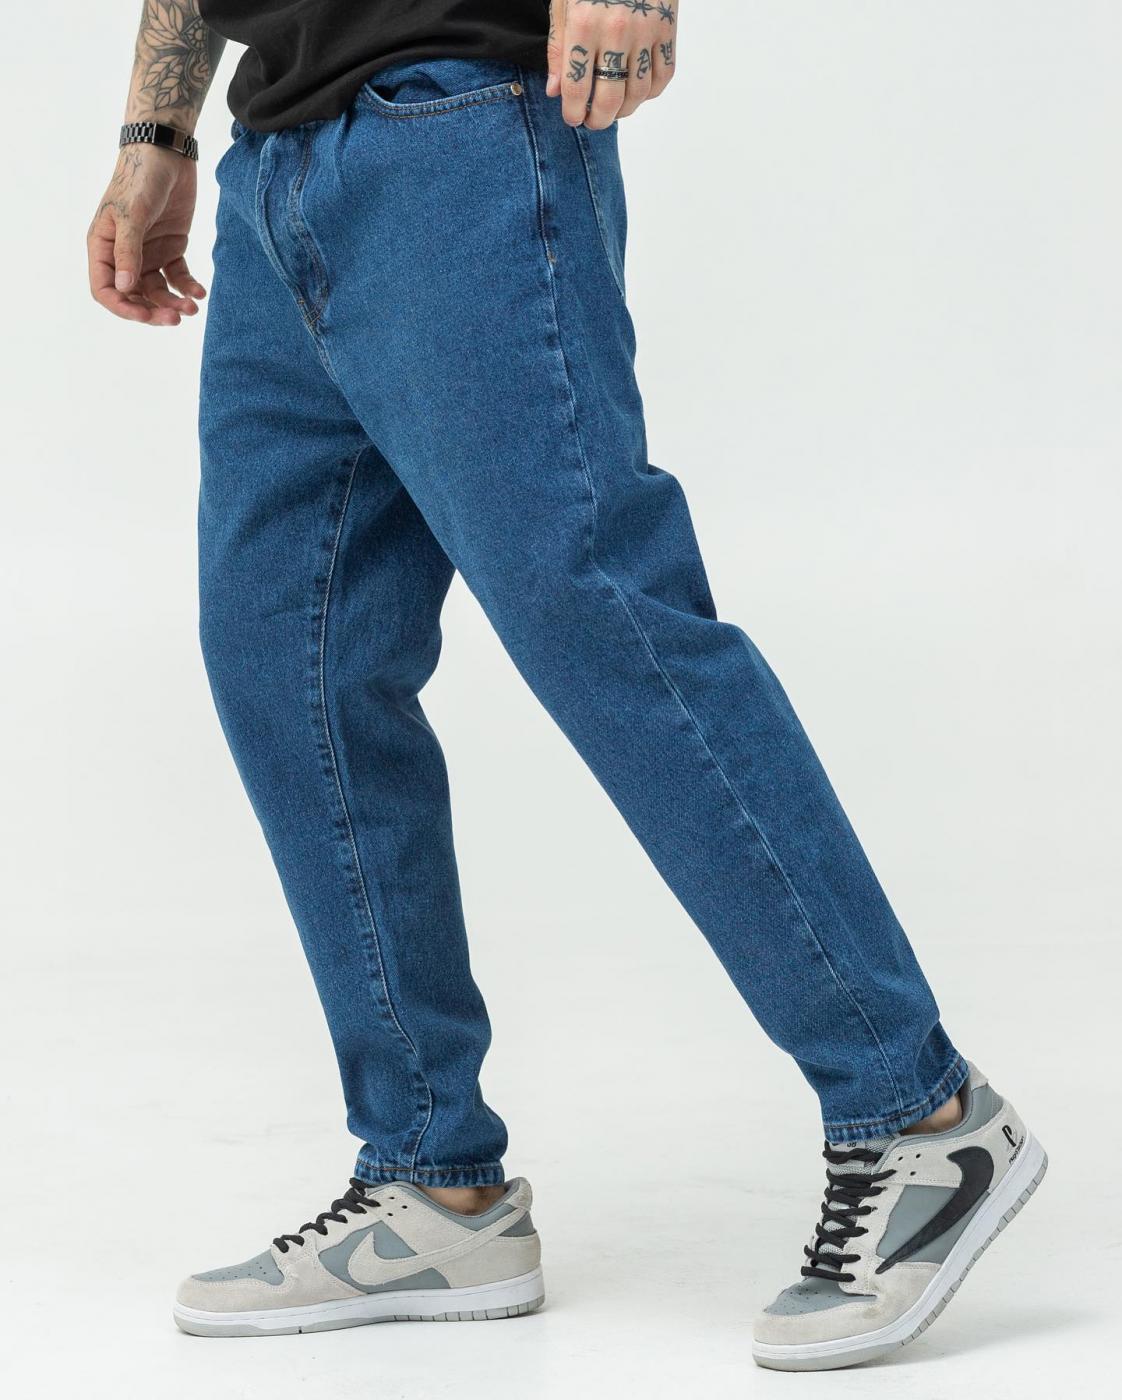 Синие джинсы базовые BEZET Slim - Фото 2